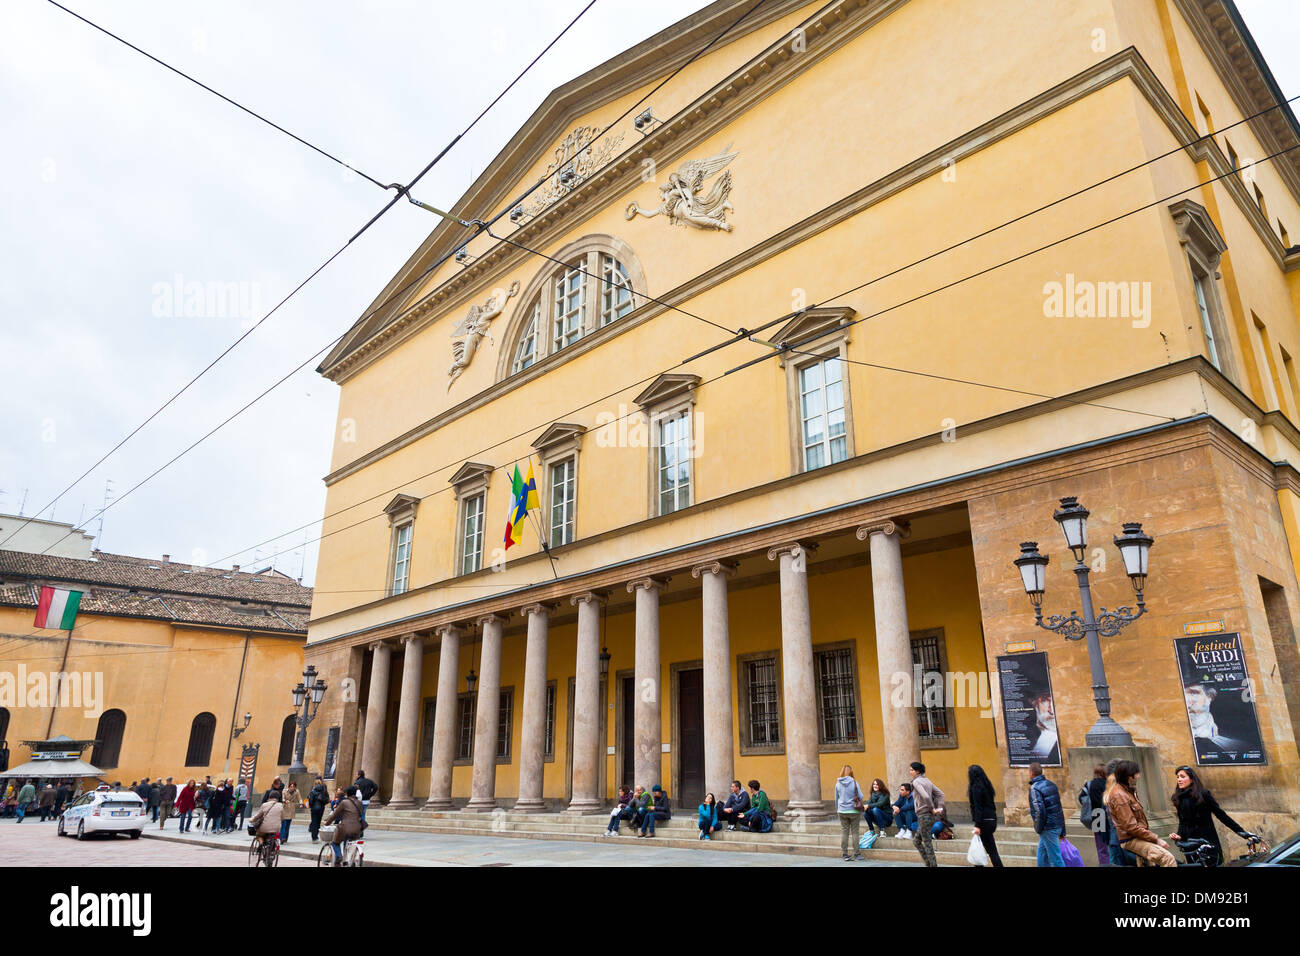 Teatro Regio di Parma - Opernhaus in Parma, Italien Stockfoto